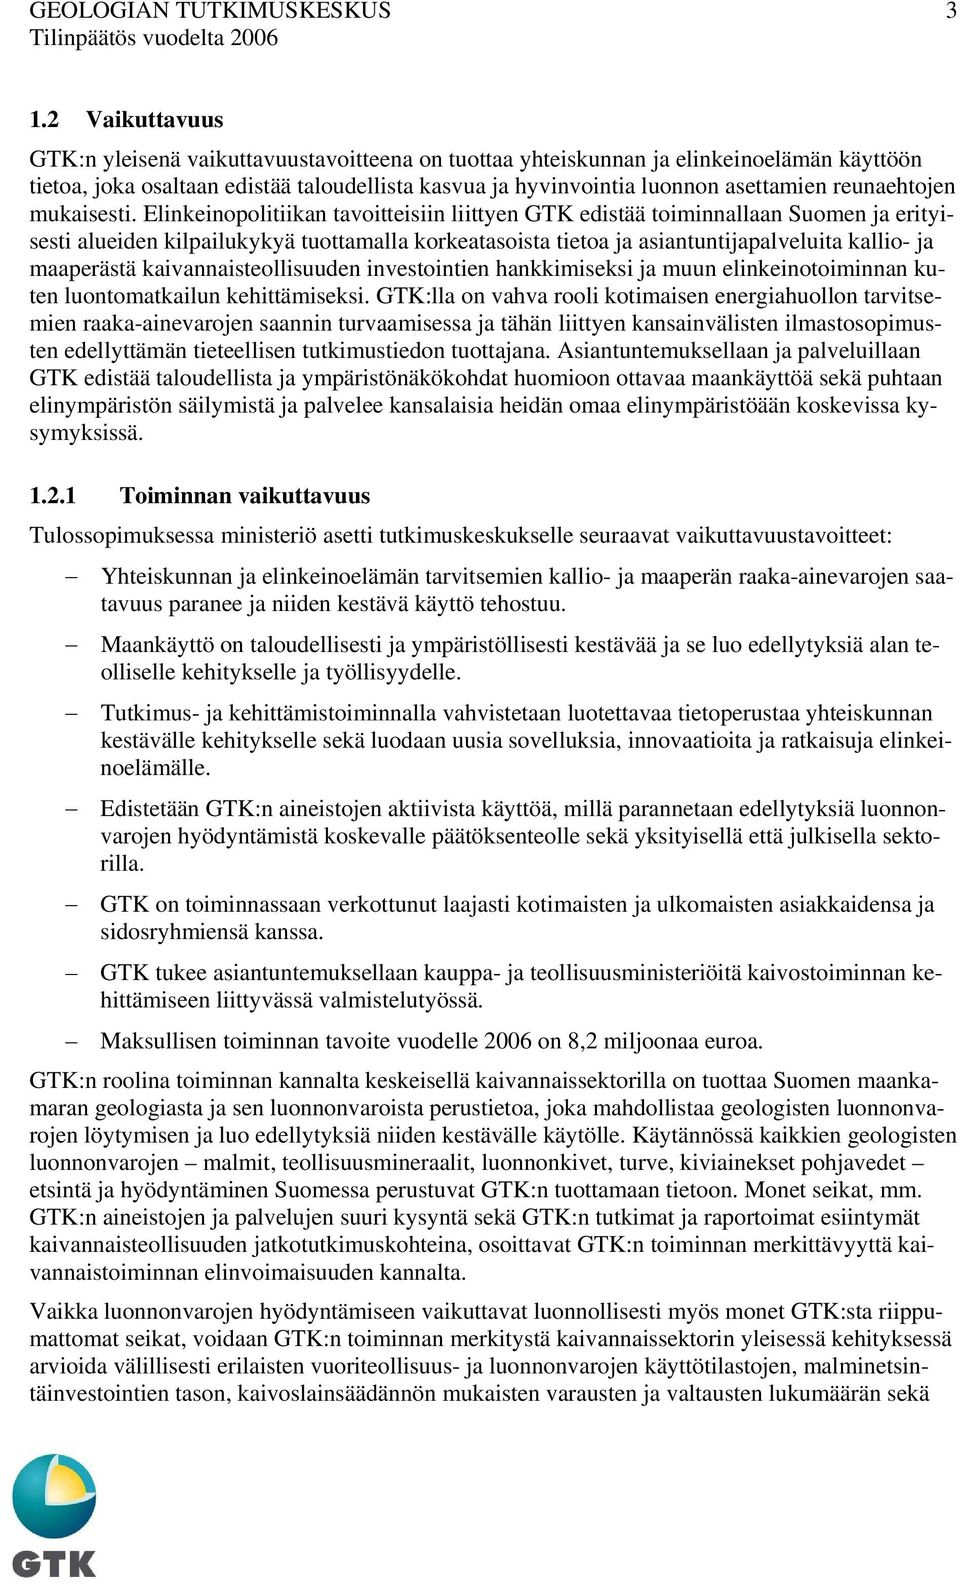 Elinkeinopolitiikan tavoitteisiin liittyen GTK edistää toiminnallaan Suomen ja erityisesti alueiden kilpailukykyä tuottamalla korkeatasoista tietoa ja asiantuntijapalveluita kallio- ja maaperästä